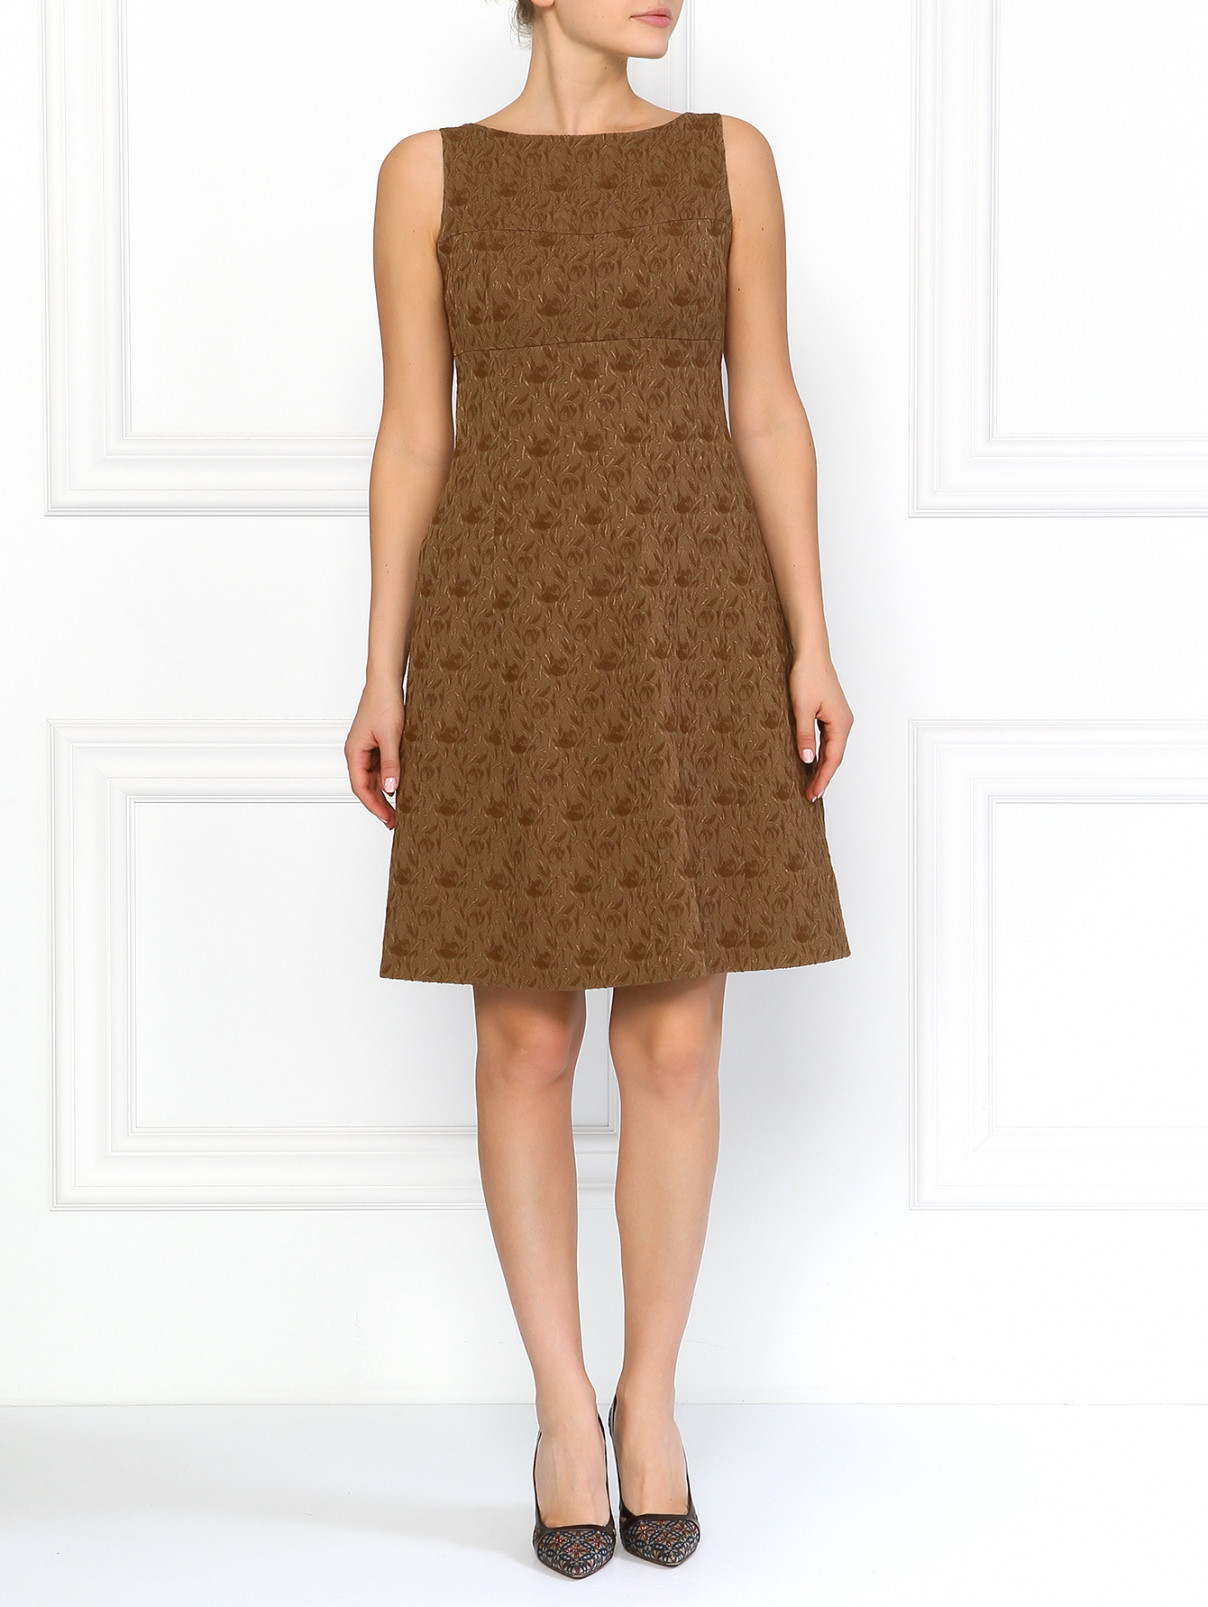 Платье из шерсти и шелка Moschino  –  Модель Общий вид  – Цвет:  Коричневый